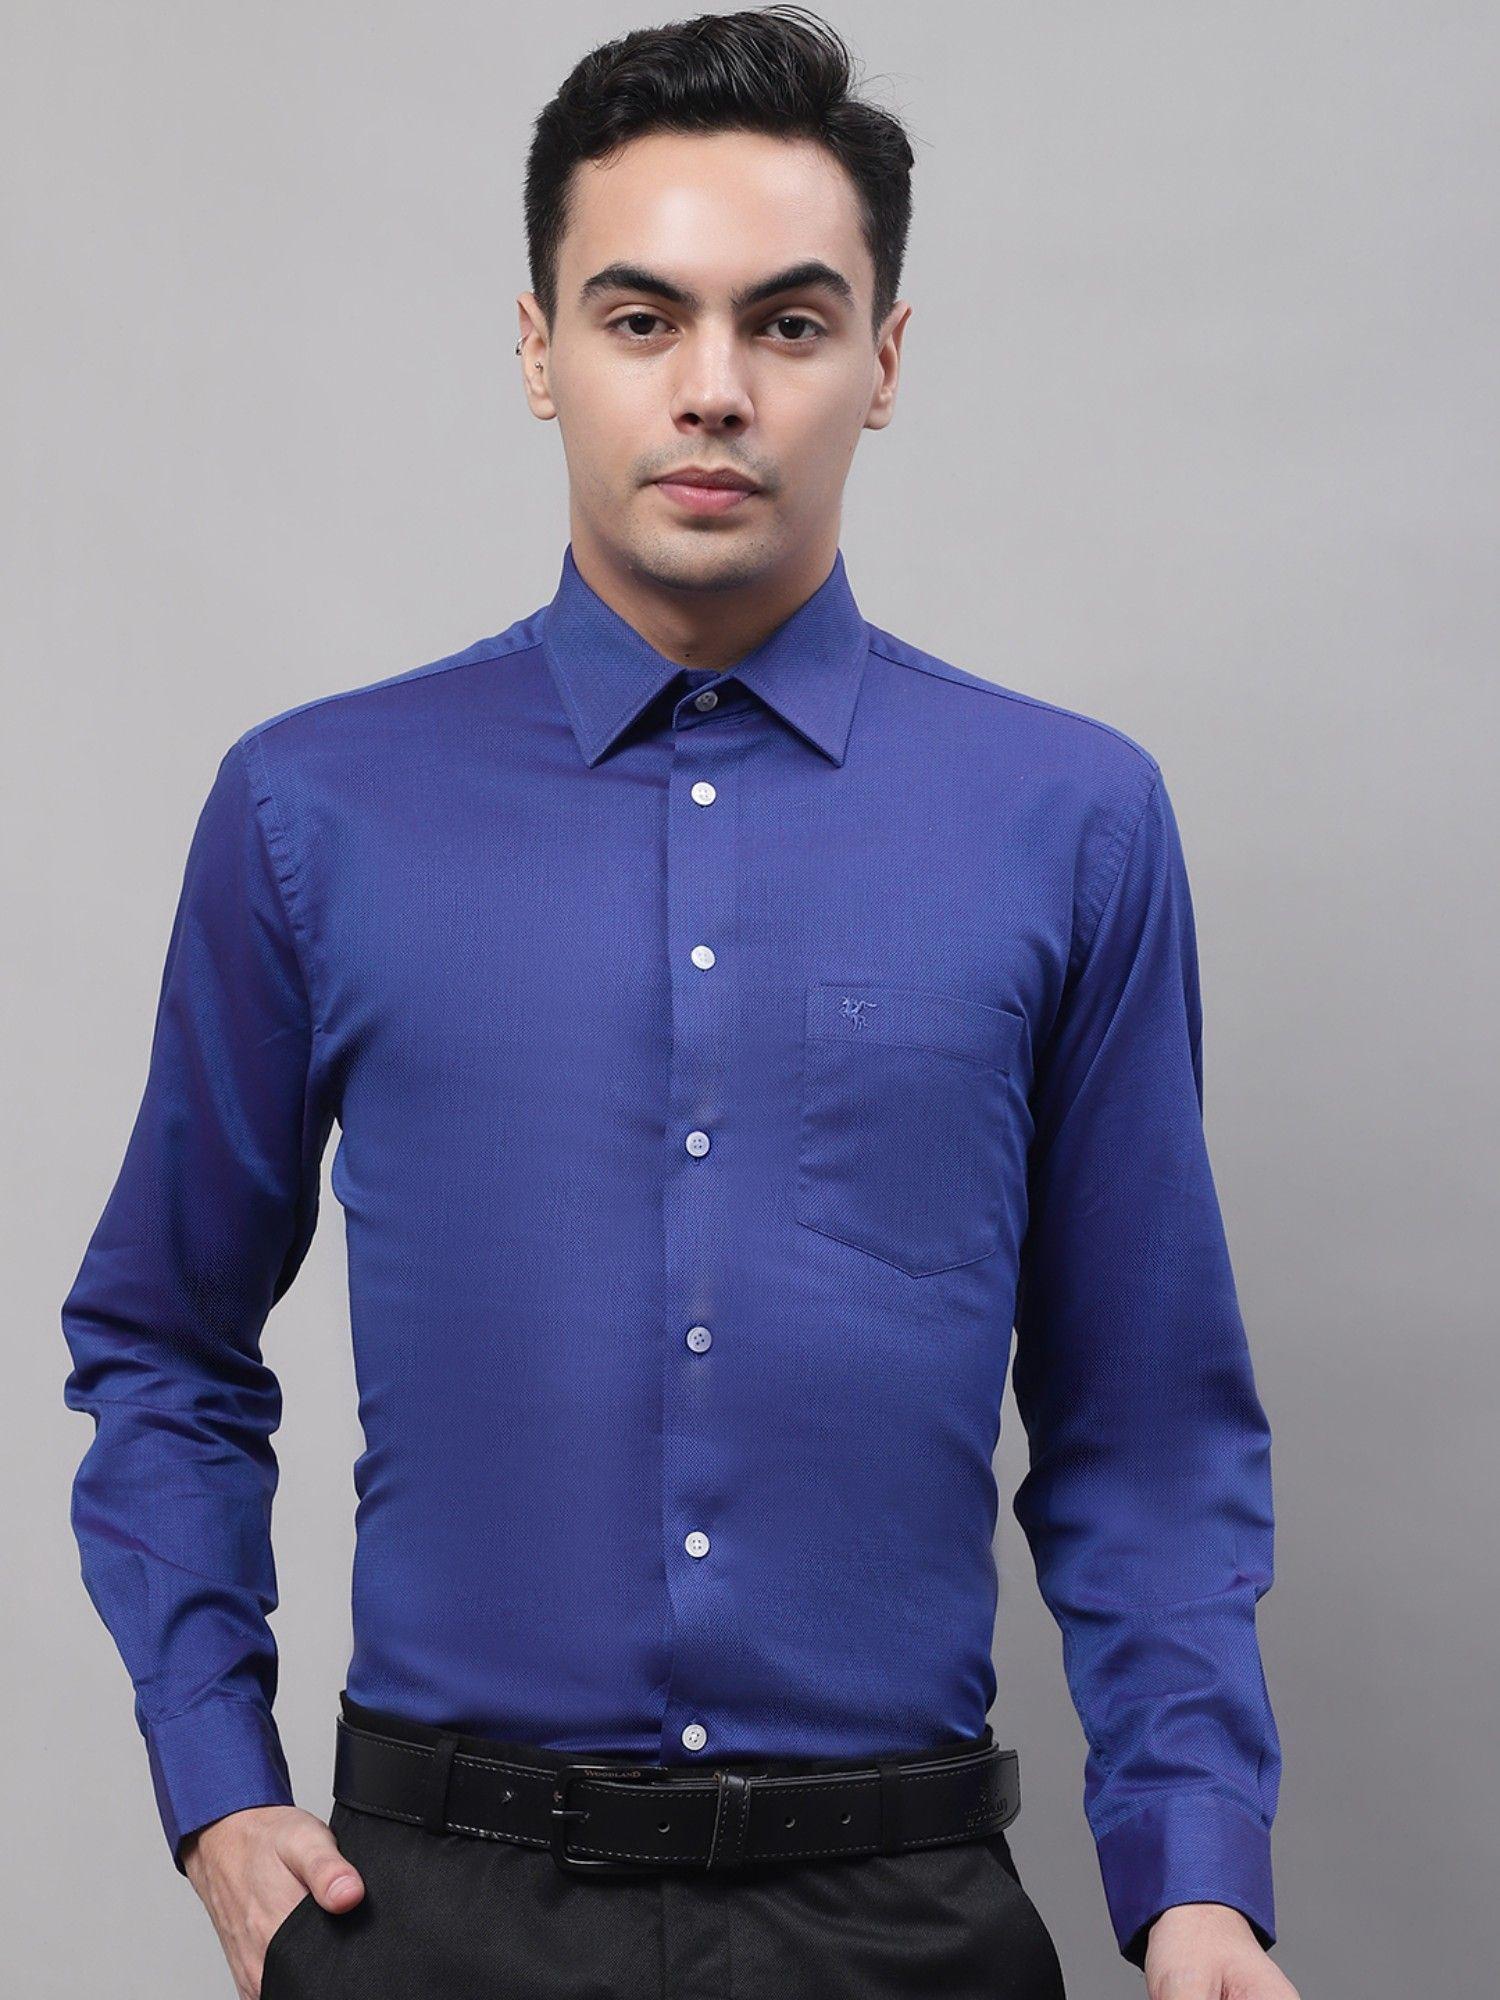 solid royal blue shirt for men